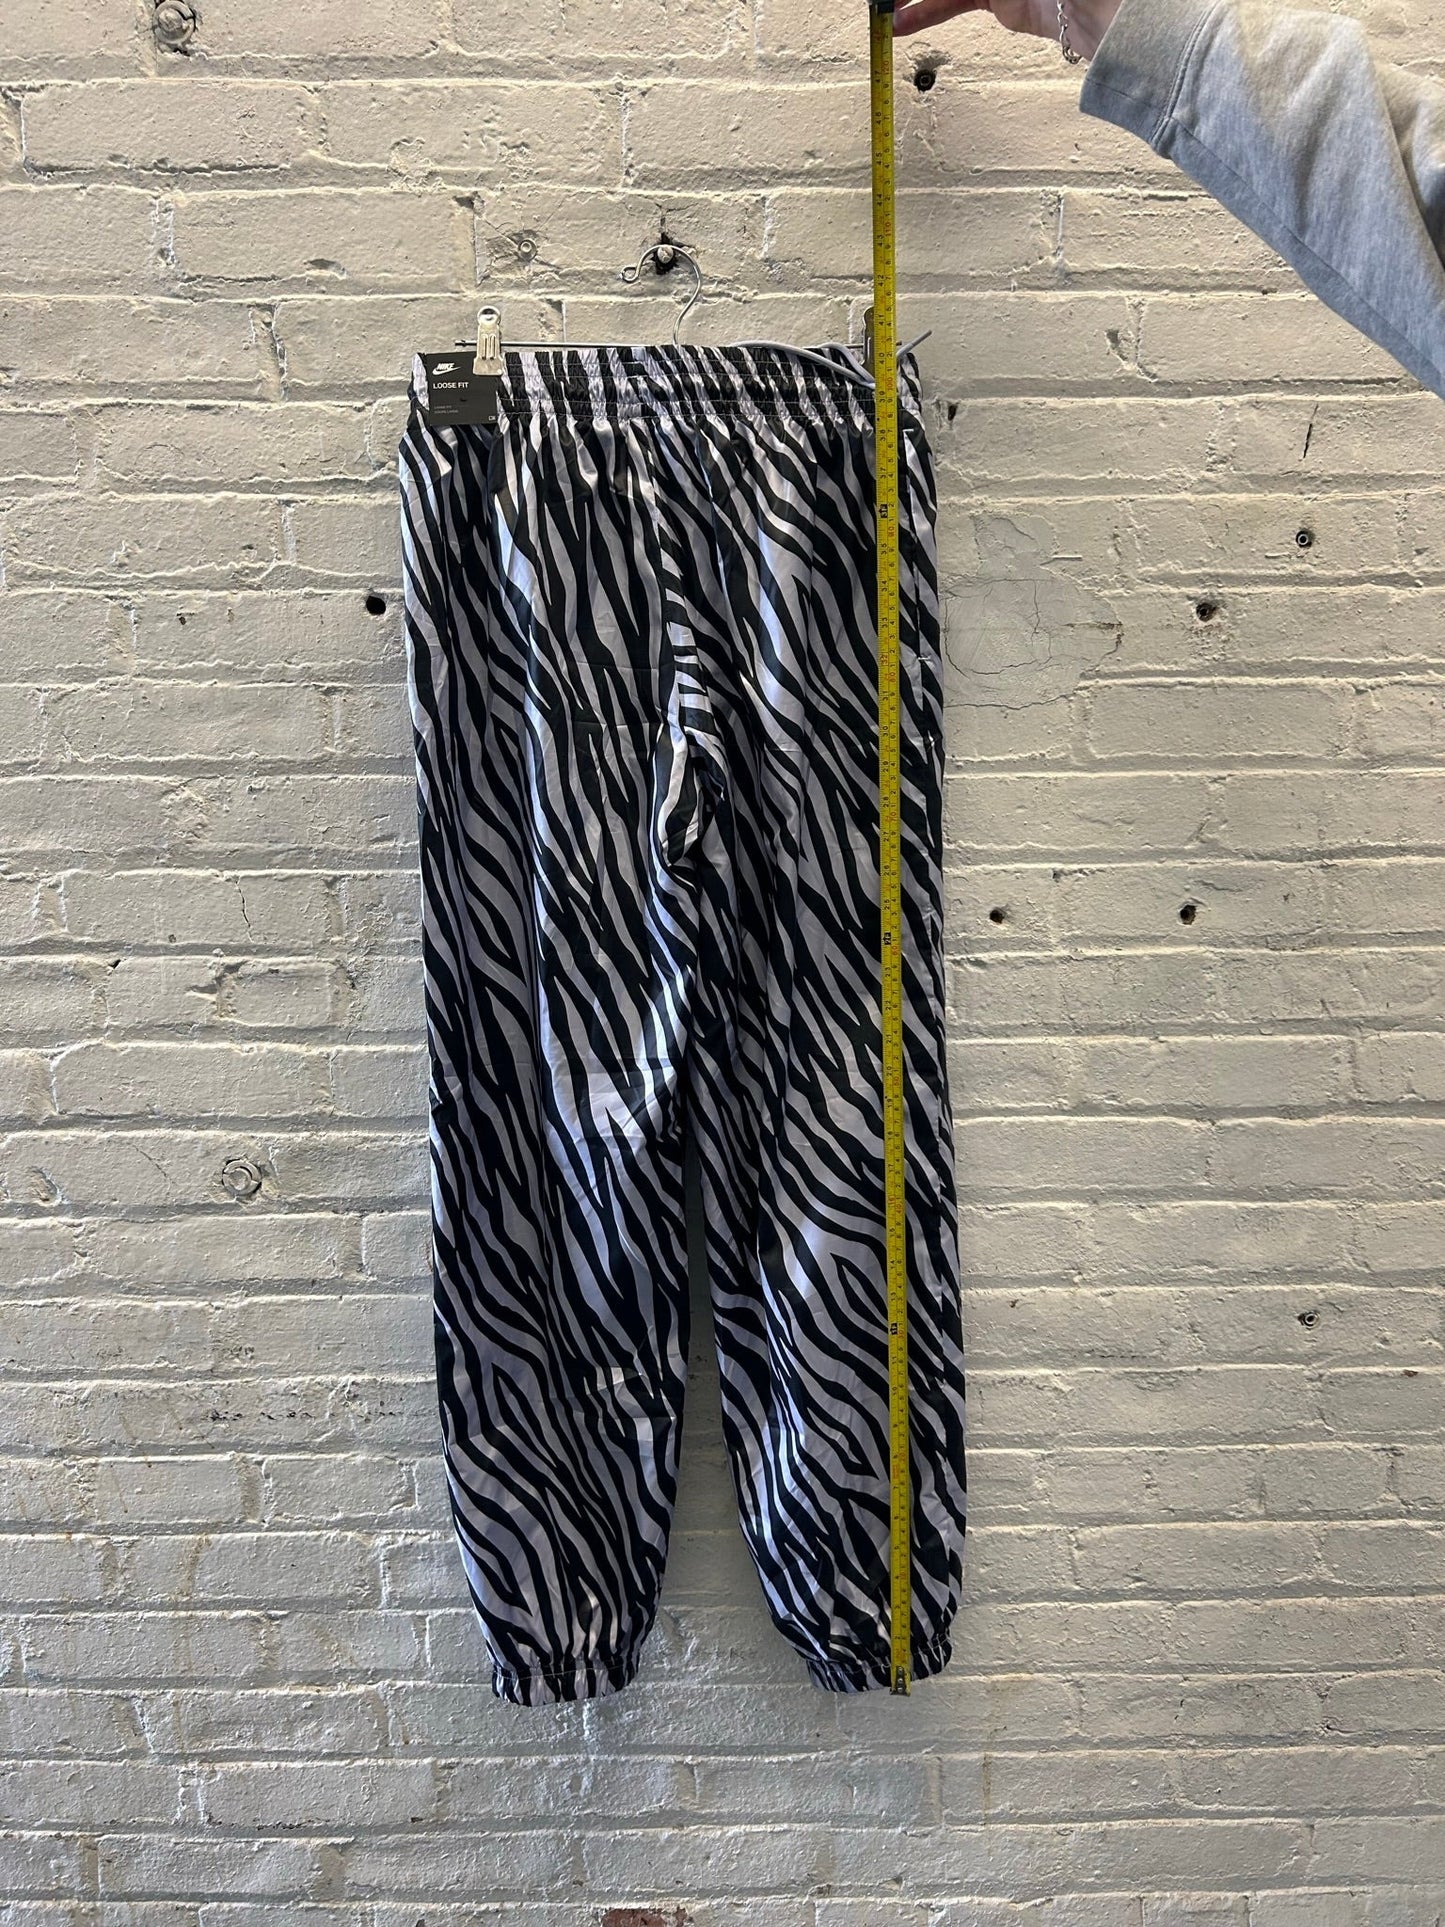 NWT Nike Black and White Zebra Pants